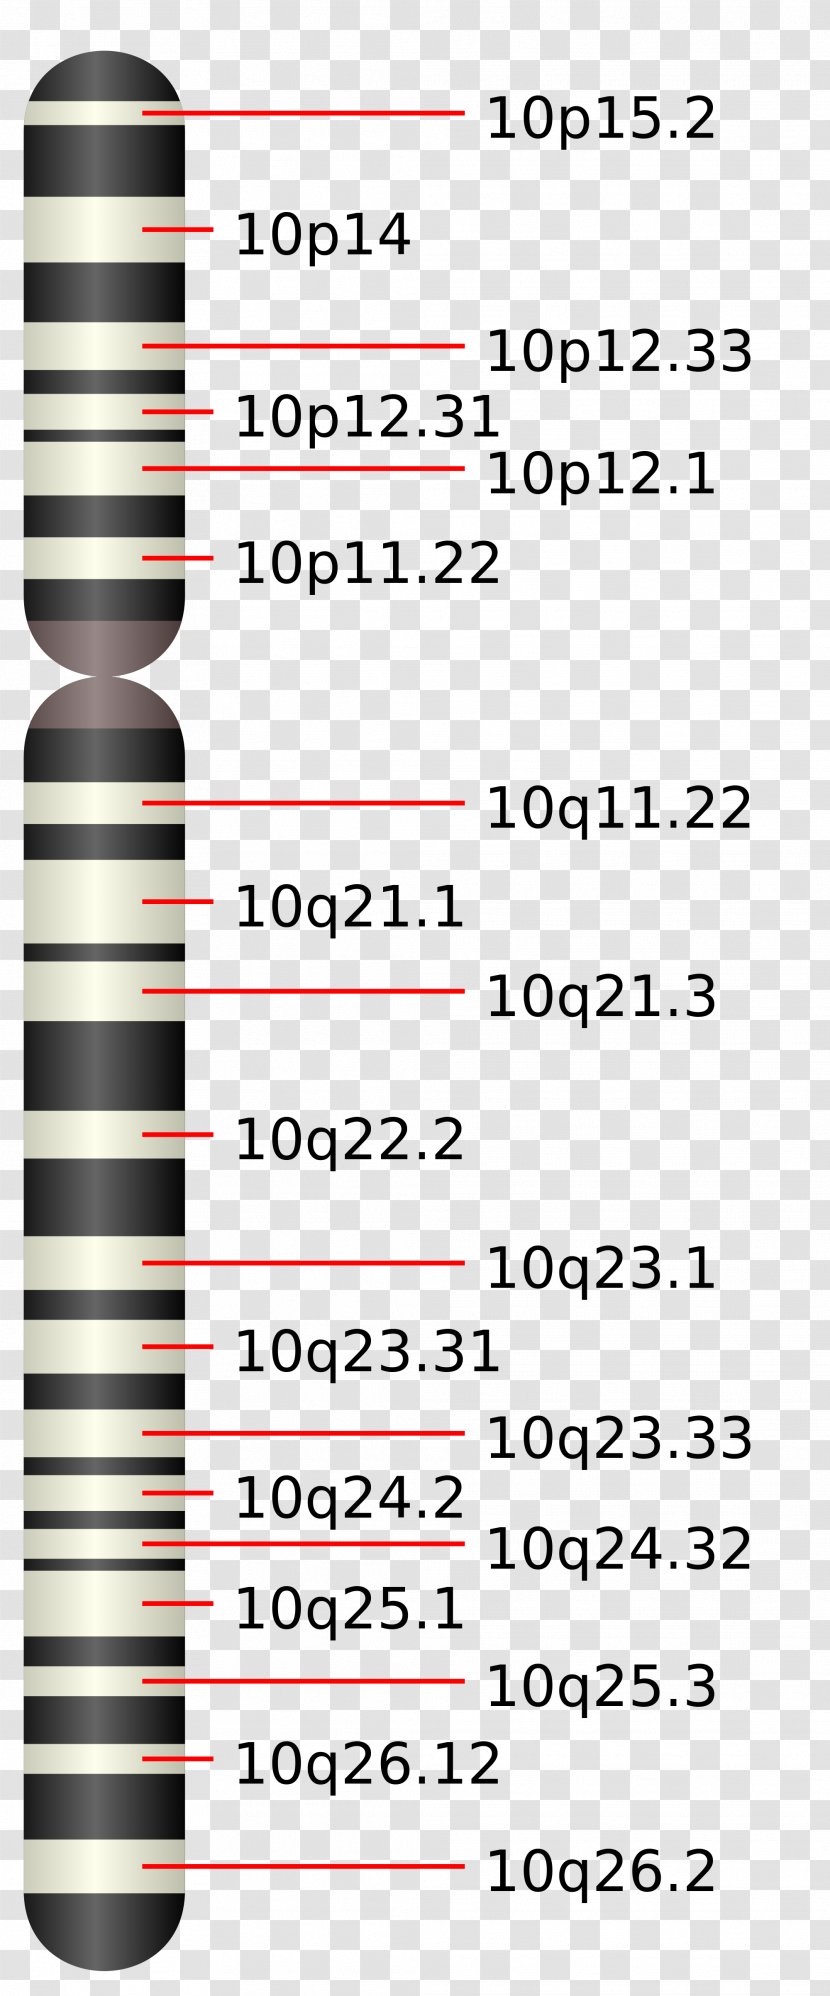 Chromosome 10 19 Chromosomes Humains 16 - 20 Transparent PNG